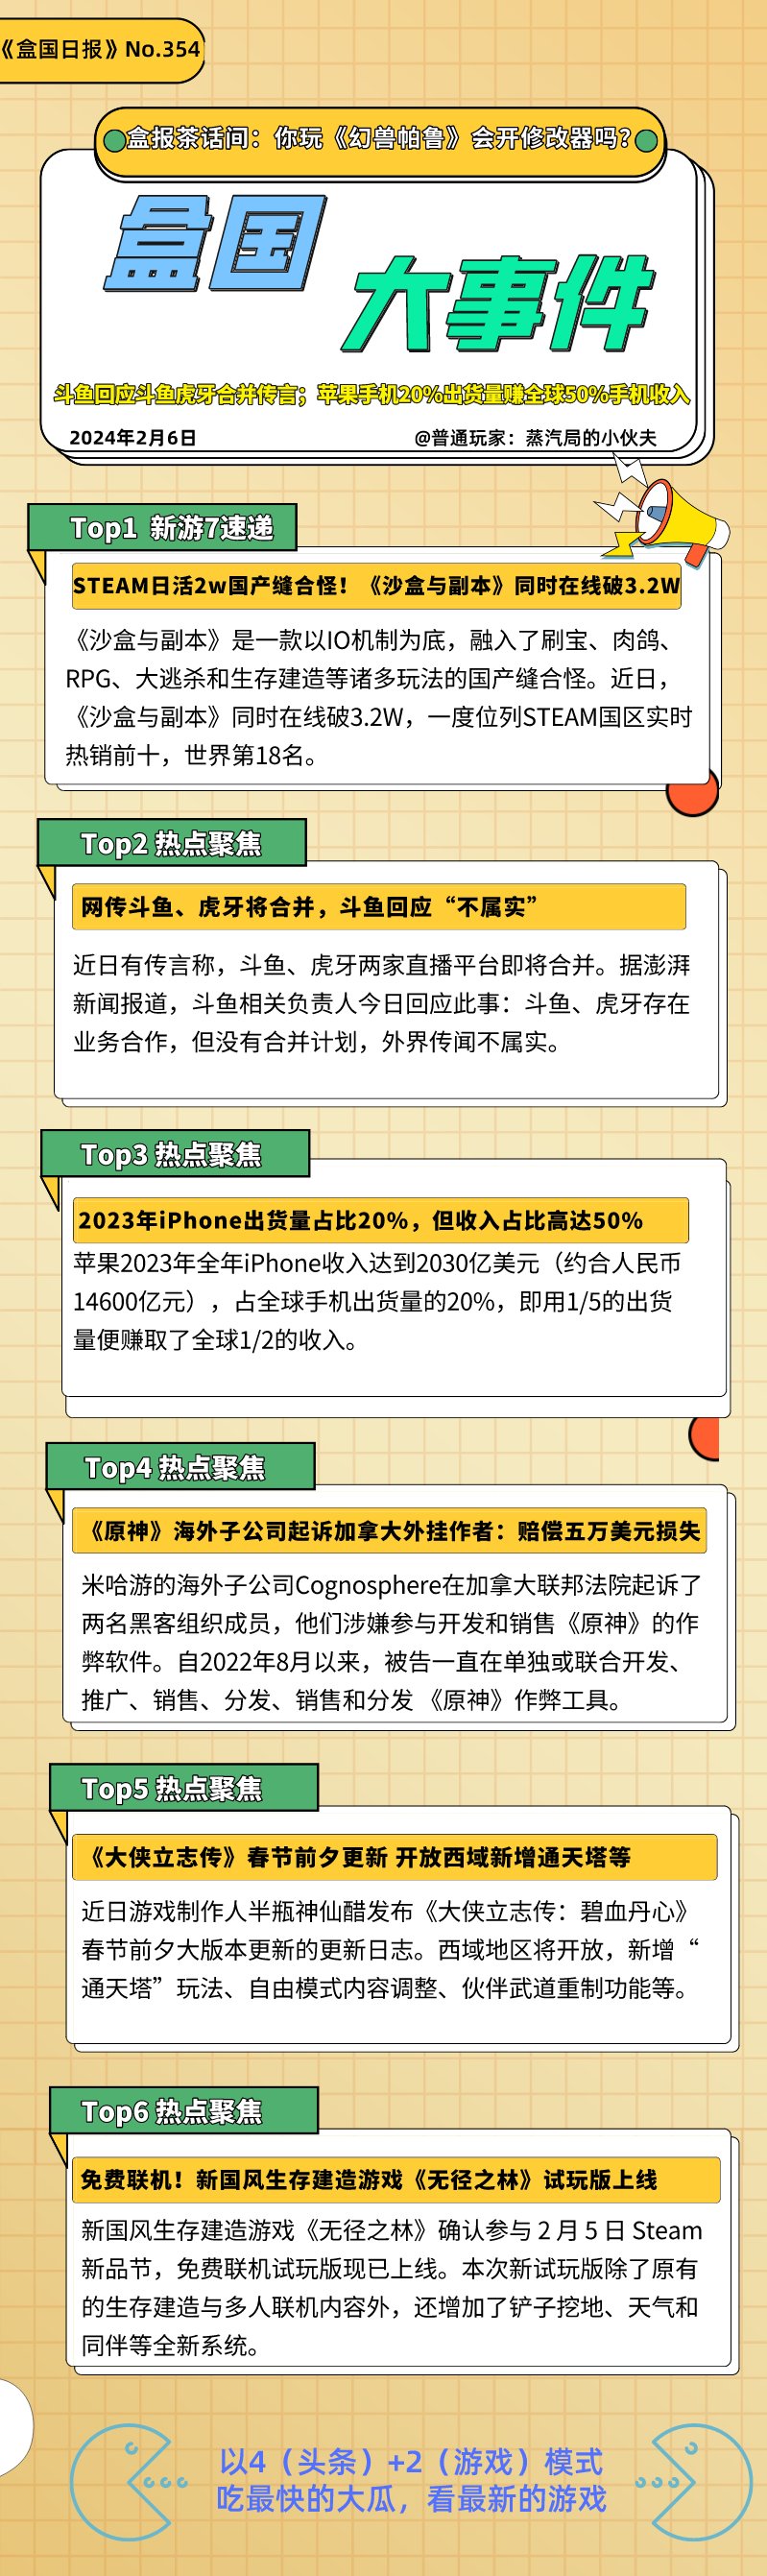 【PC游戏】投票斗鱼回应斗鱼虎牙合并传言；苹果手机20%出货量赚全球50%手机收入